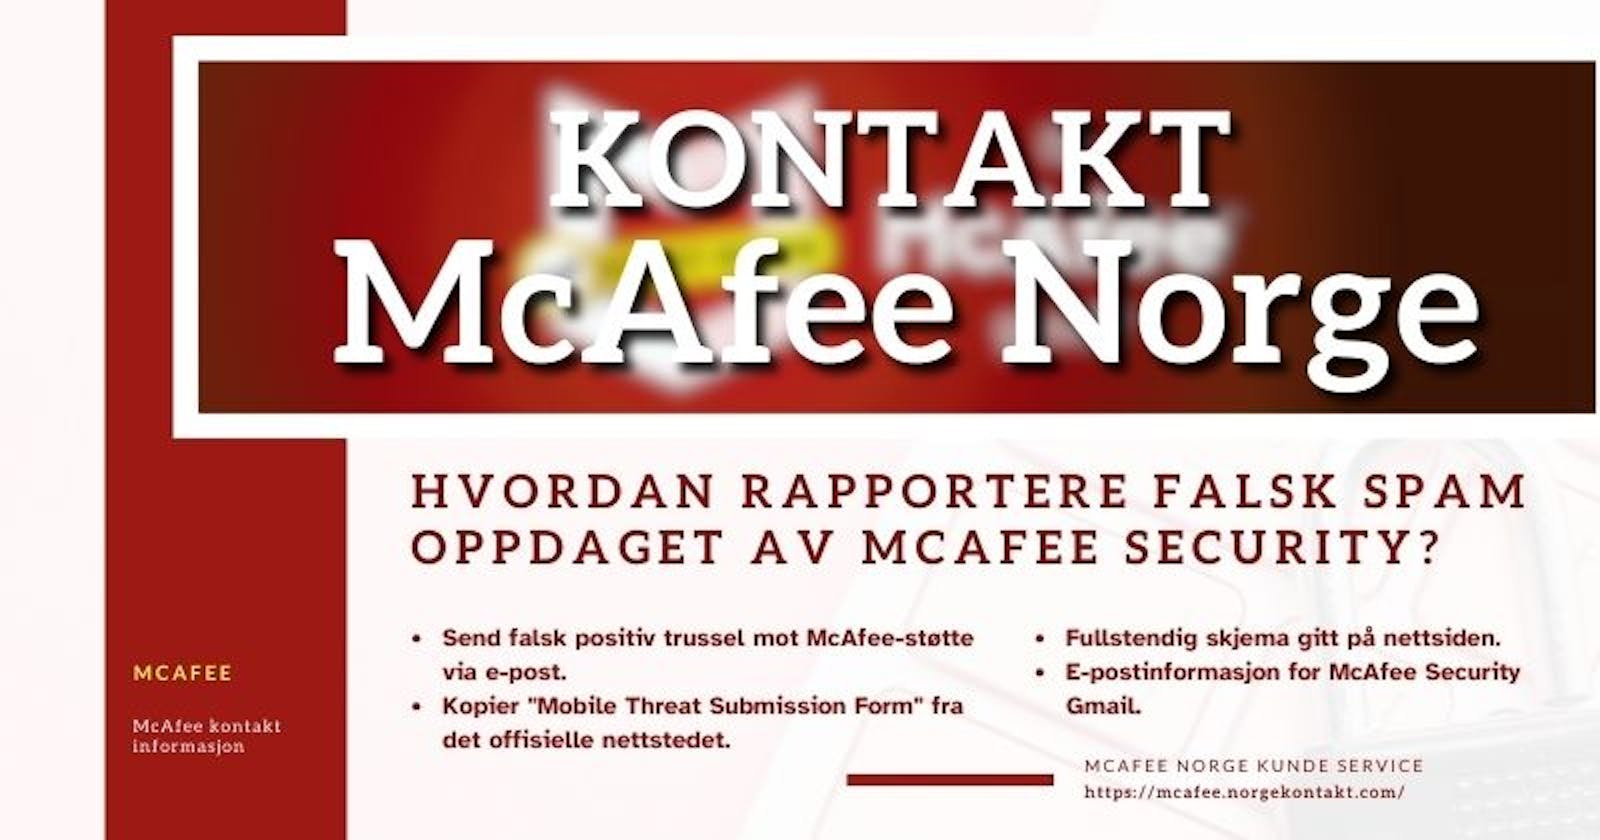 Hvordan rapportere falsk spam oppdaget av McAfee Security?